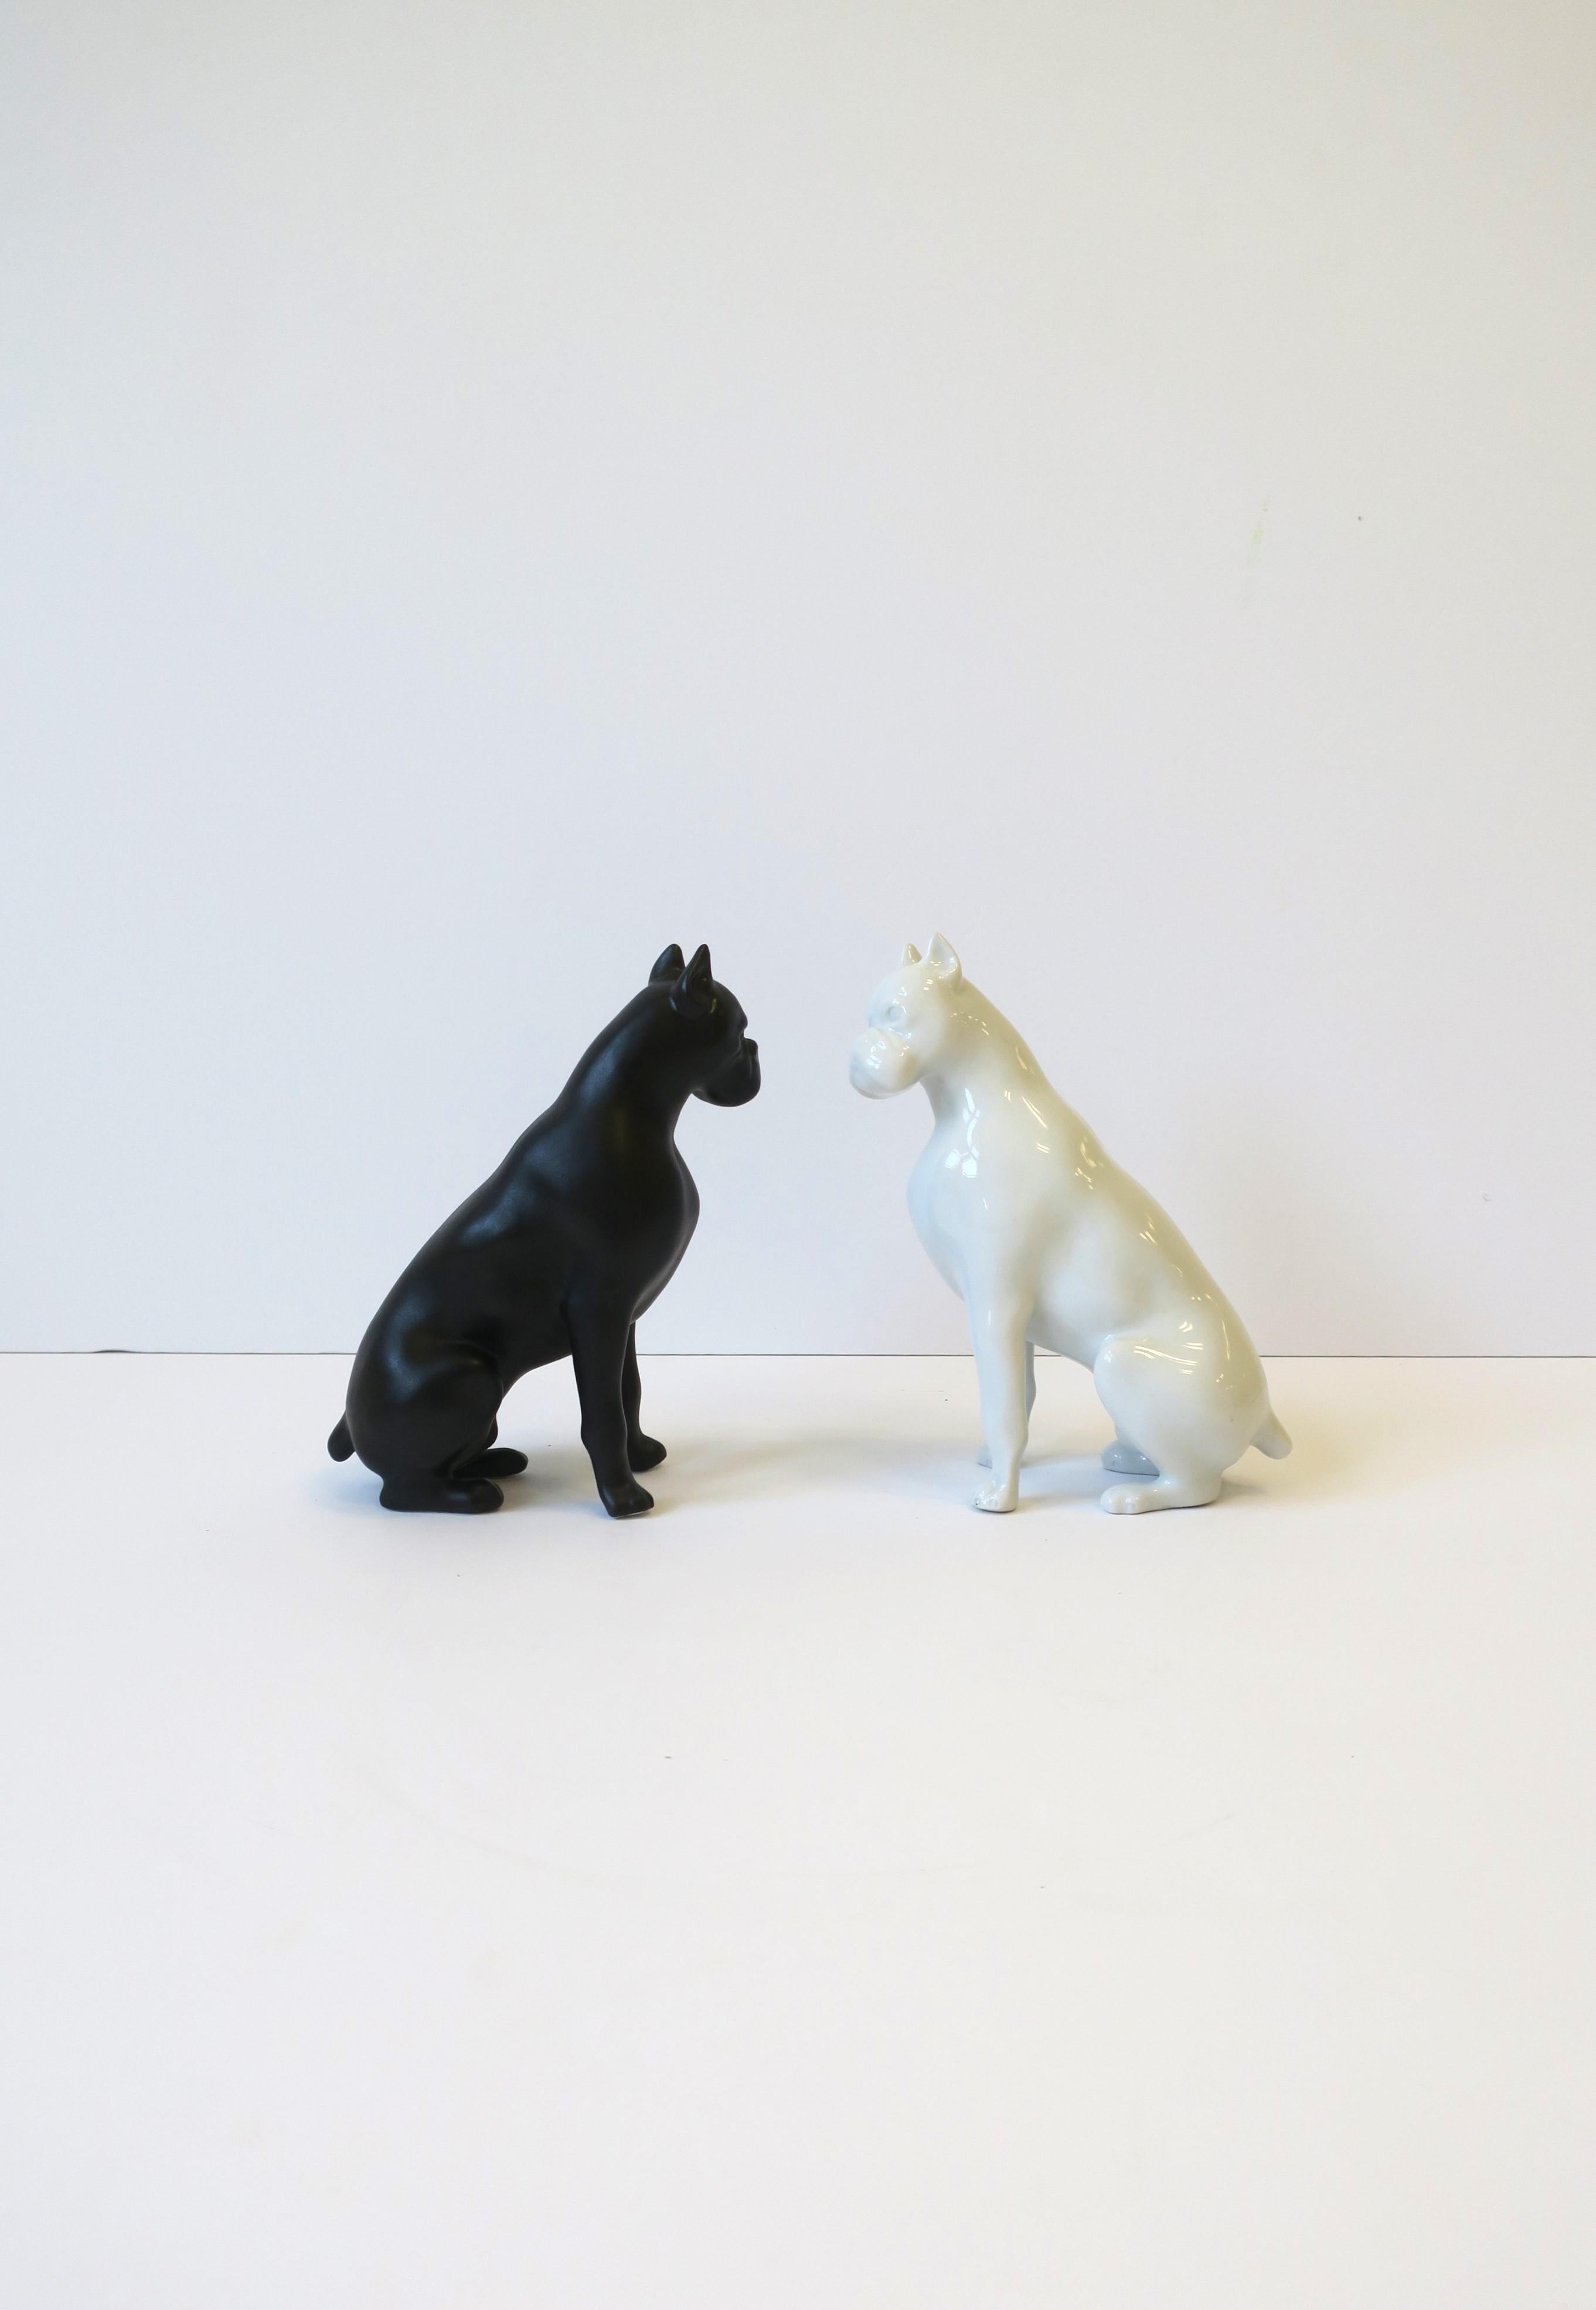 Magnifique paire/ensemble de sculptures de chiens en porcelaine italienne noire et blanche, objets décoratifs de Royal Dux Bohemia, vers le milieu du XXe siècle, Tchécoslovaquie. Une belle paire en porcelaine noire et blanche ; le chien noir a une